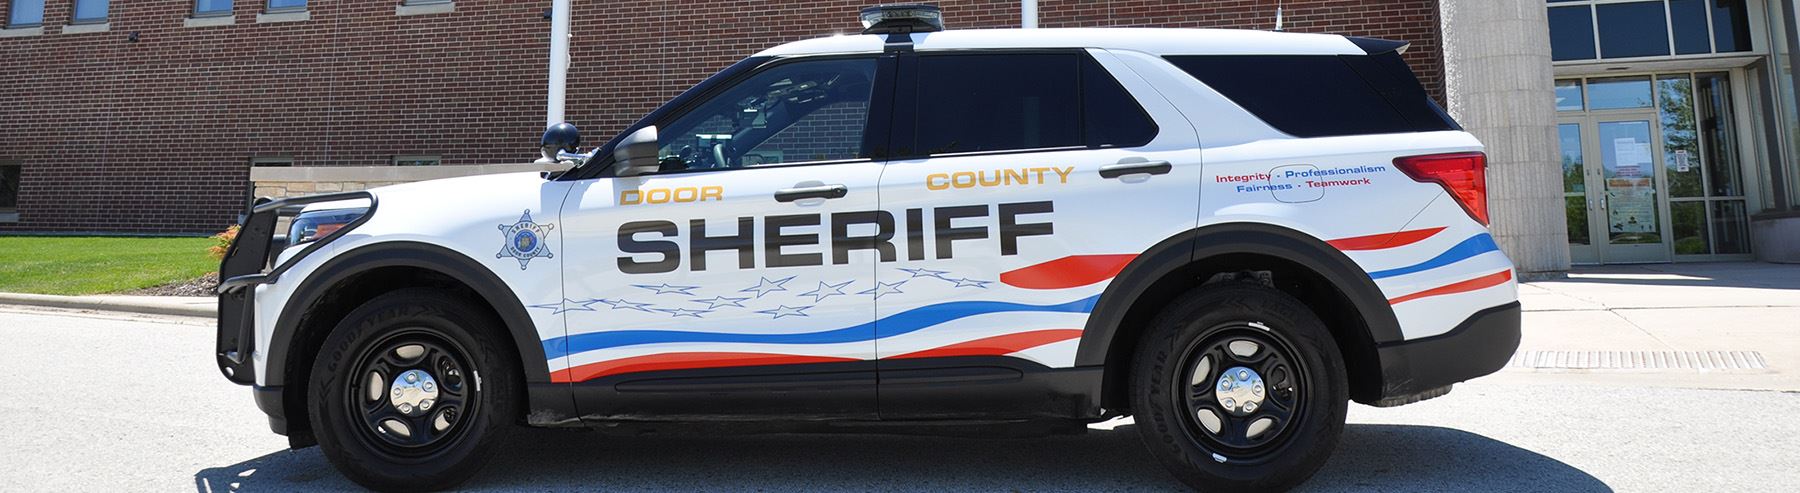 Image of Door County Sheriff's Office